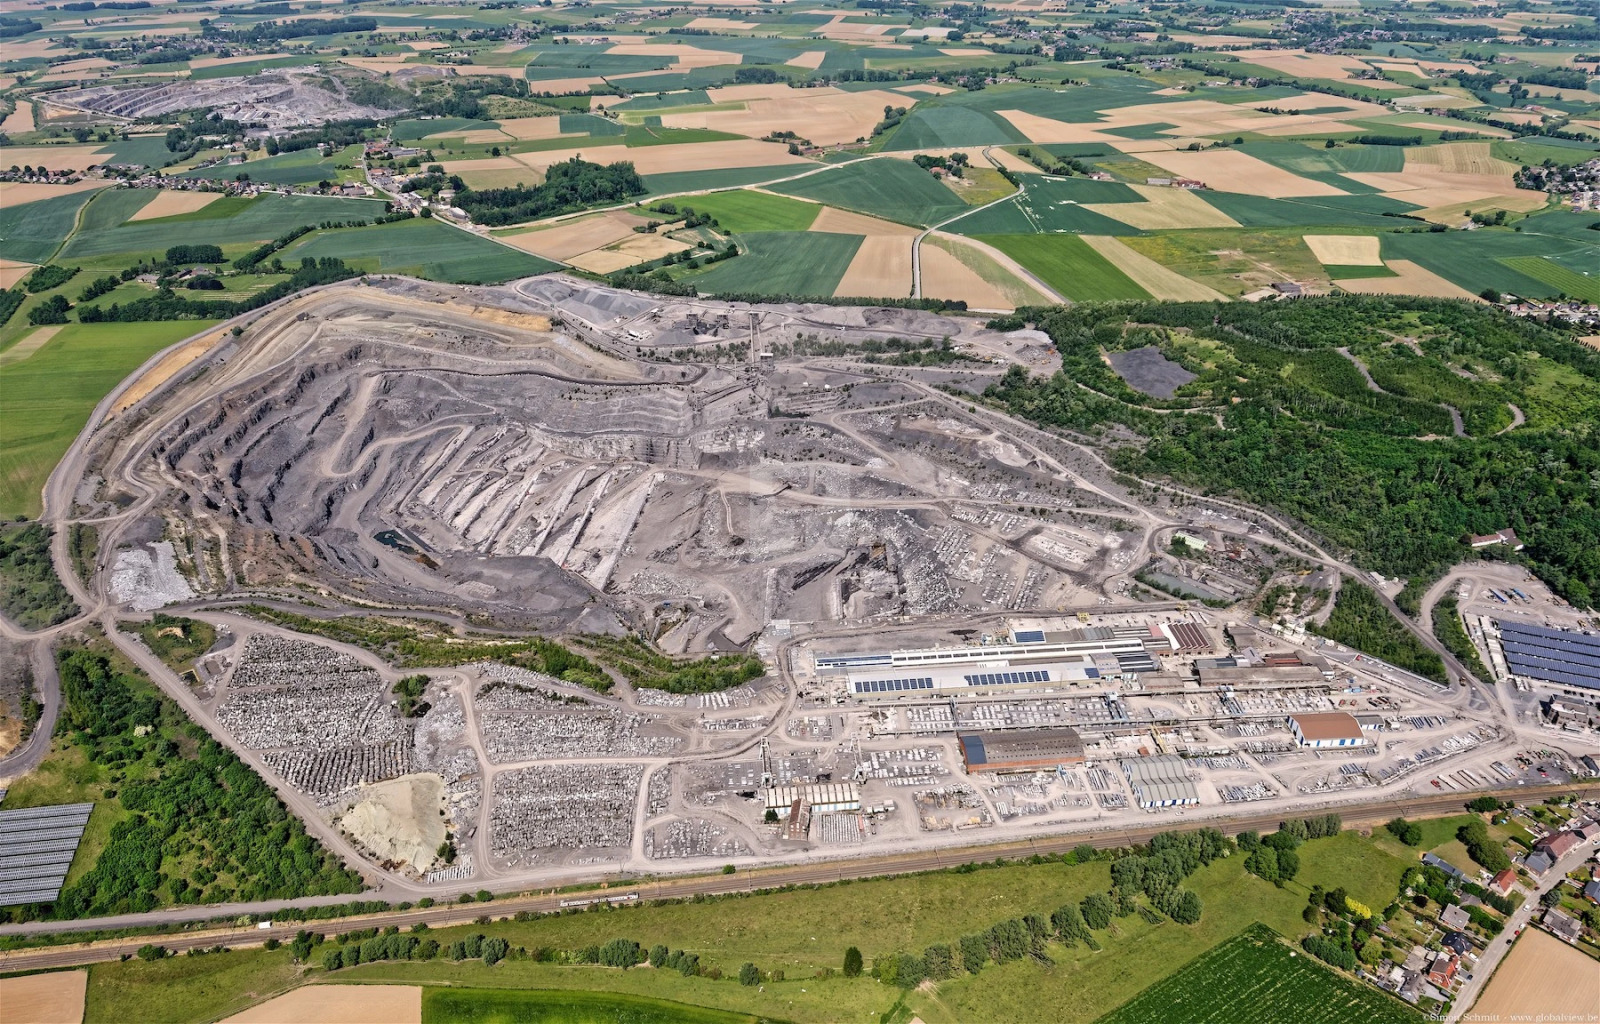 Carrière du Hainaut bluestone quarry